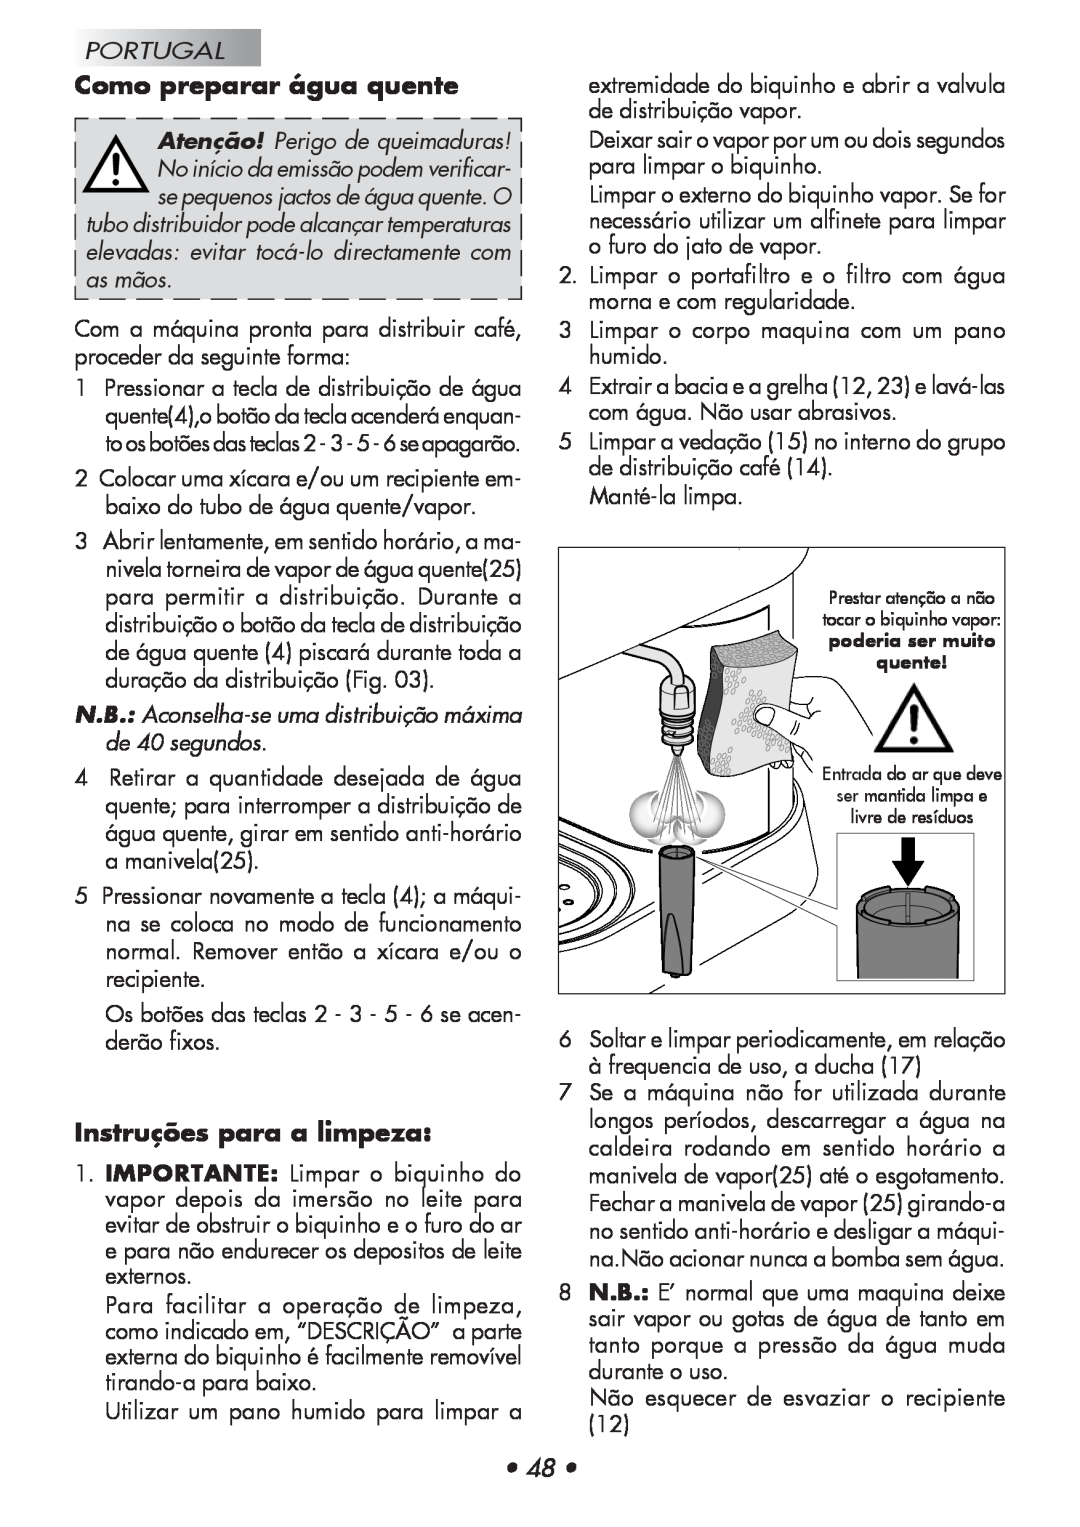 Gaggia 12300-8002, 14101-8002 manual Como preparar água quente, Instruções para a limpeza, Portugal 